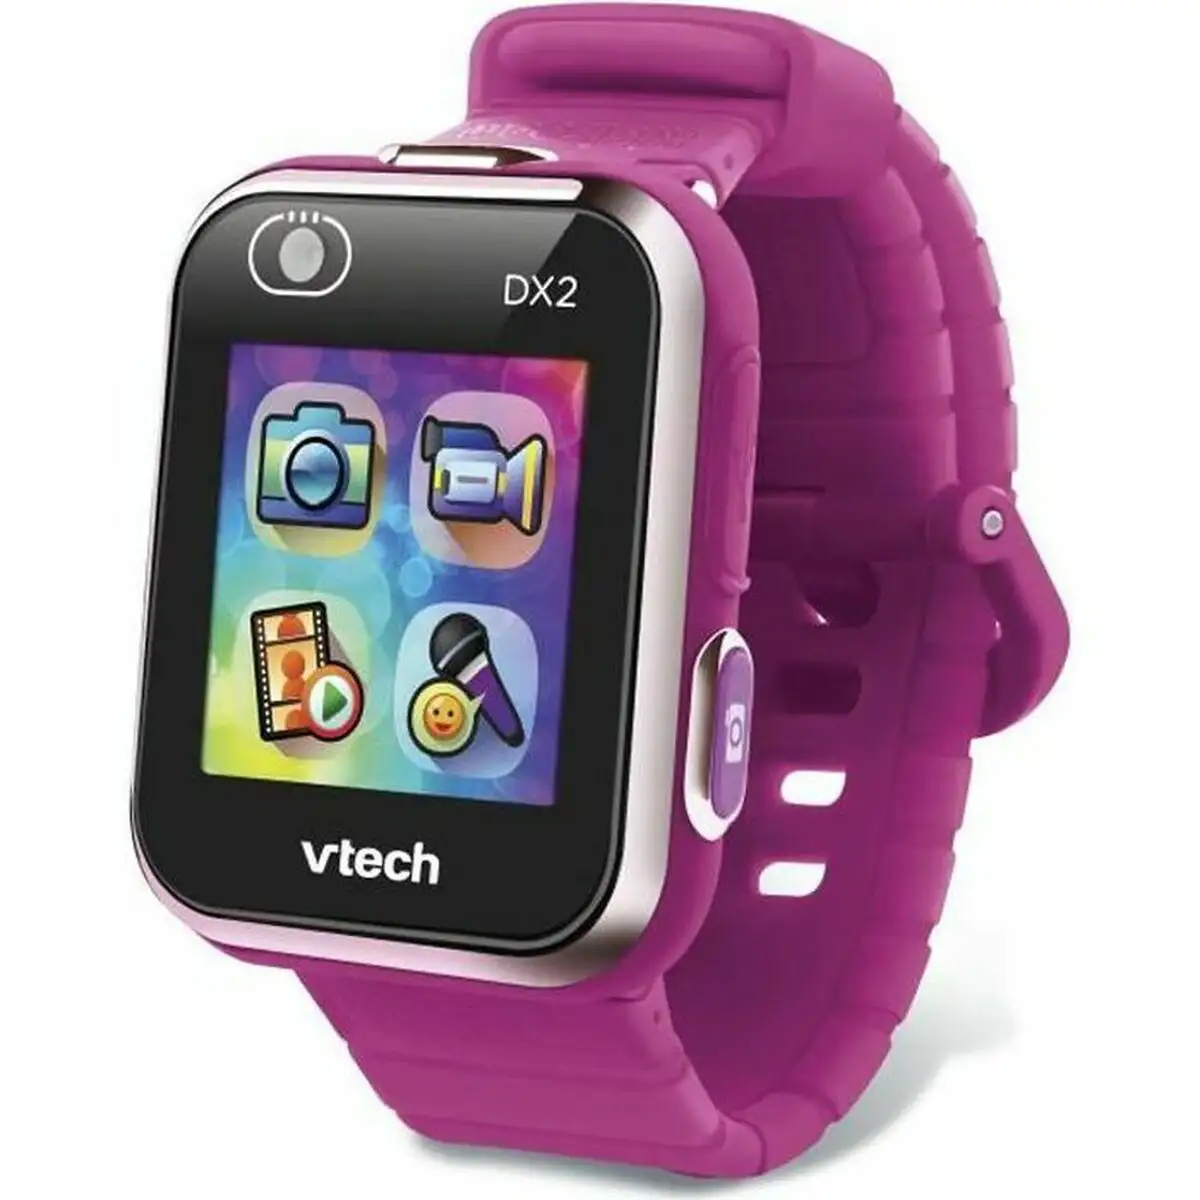 Smartwatch pour enfants vtech dx2 reconditionne c _8279. DIAYTAR SENEGAL - L'Art de Choisir, l'Art de S'émerveiller. Explorez notre gamme de produits et laissez-vous émerveiller par des créations authentiques et des designs modernes.